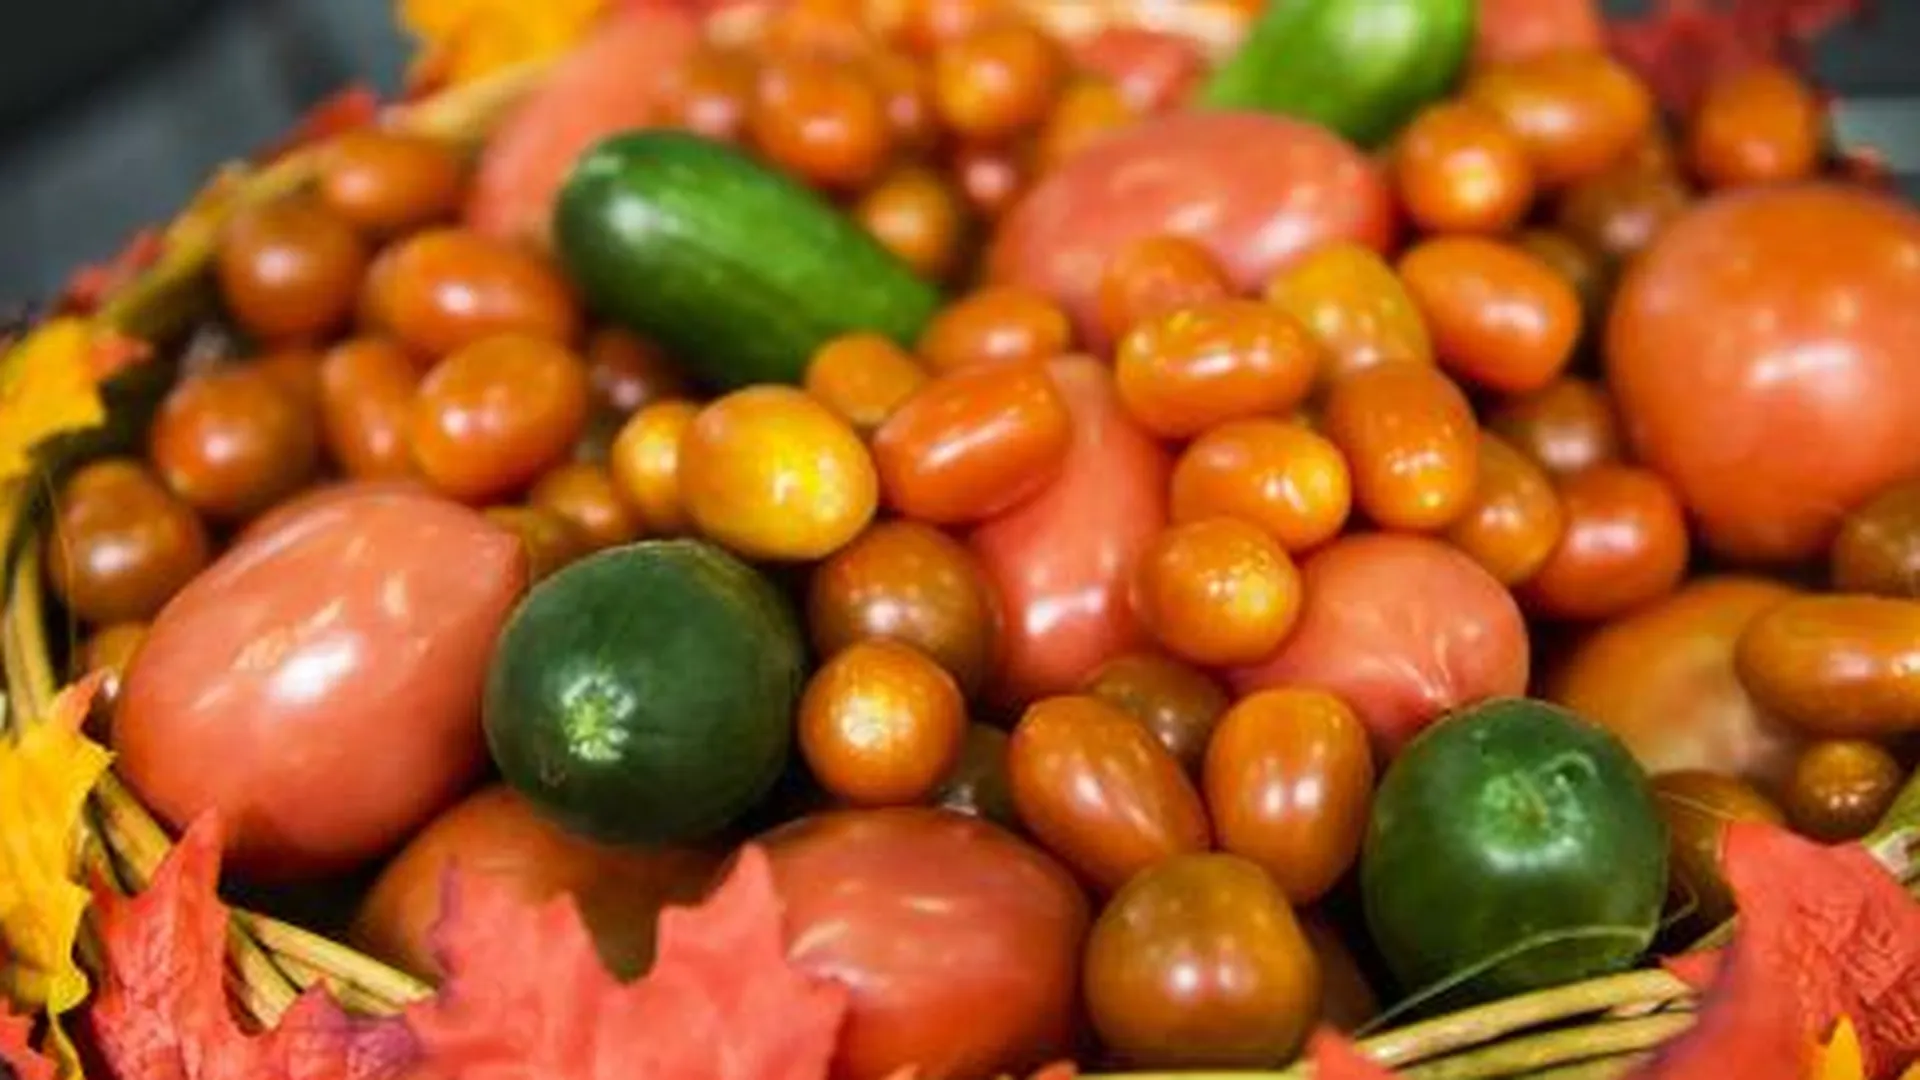 На 30% хотят повысить самообеспеченность региона тепличными овощами в 2016 году